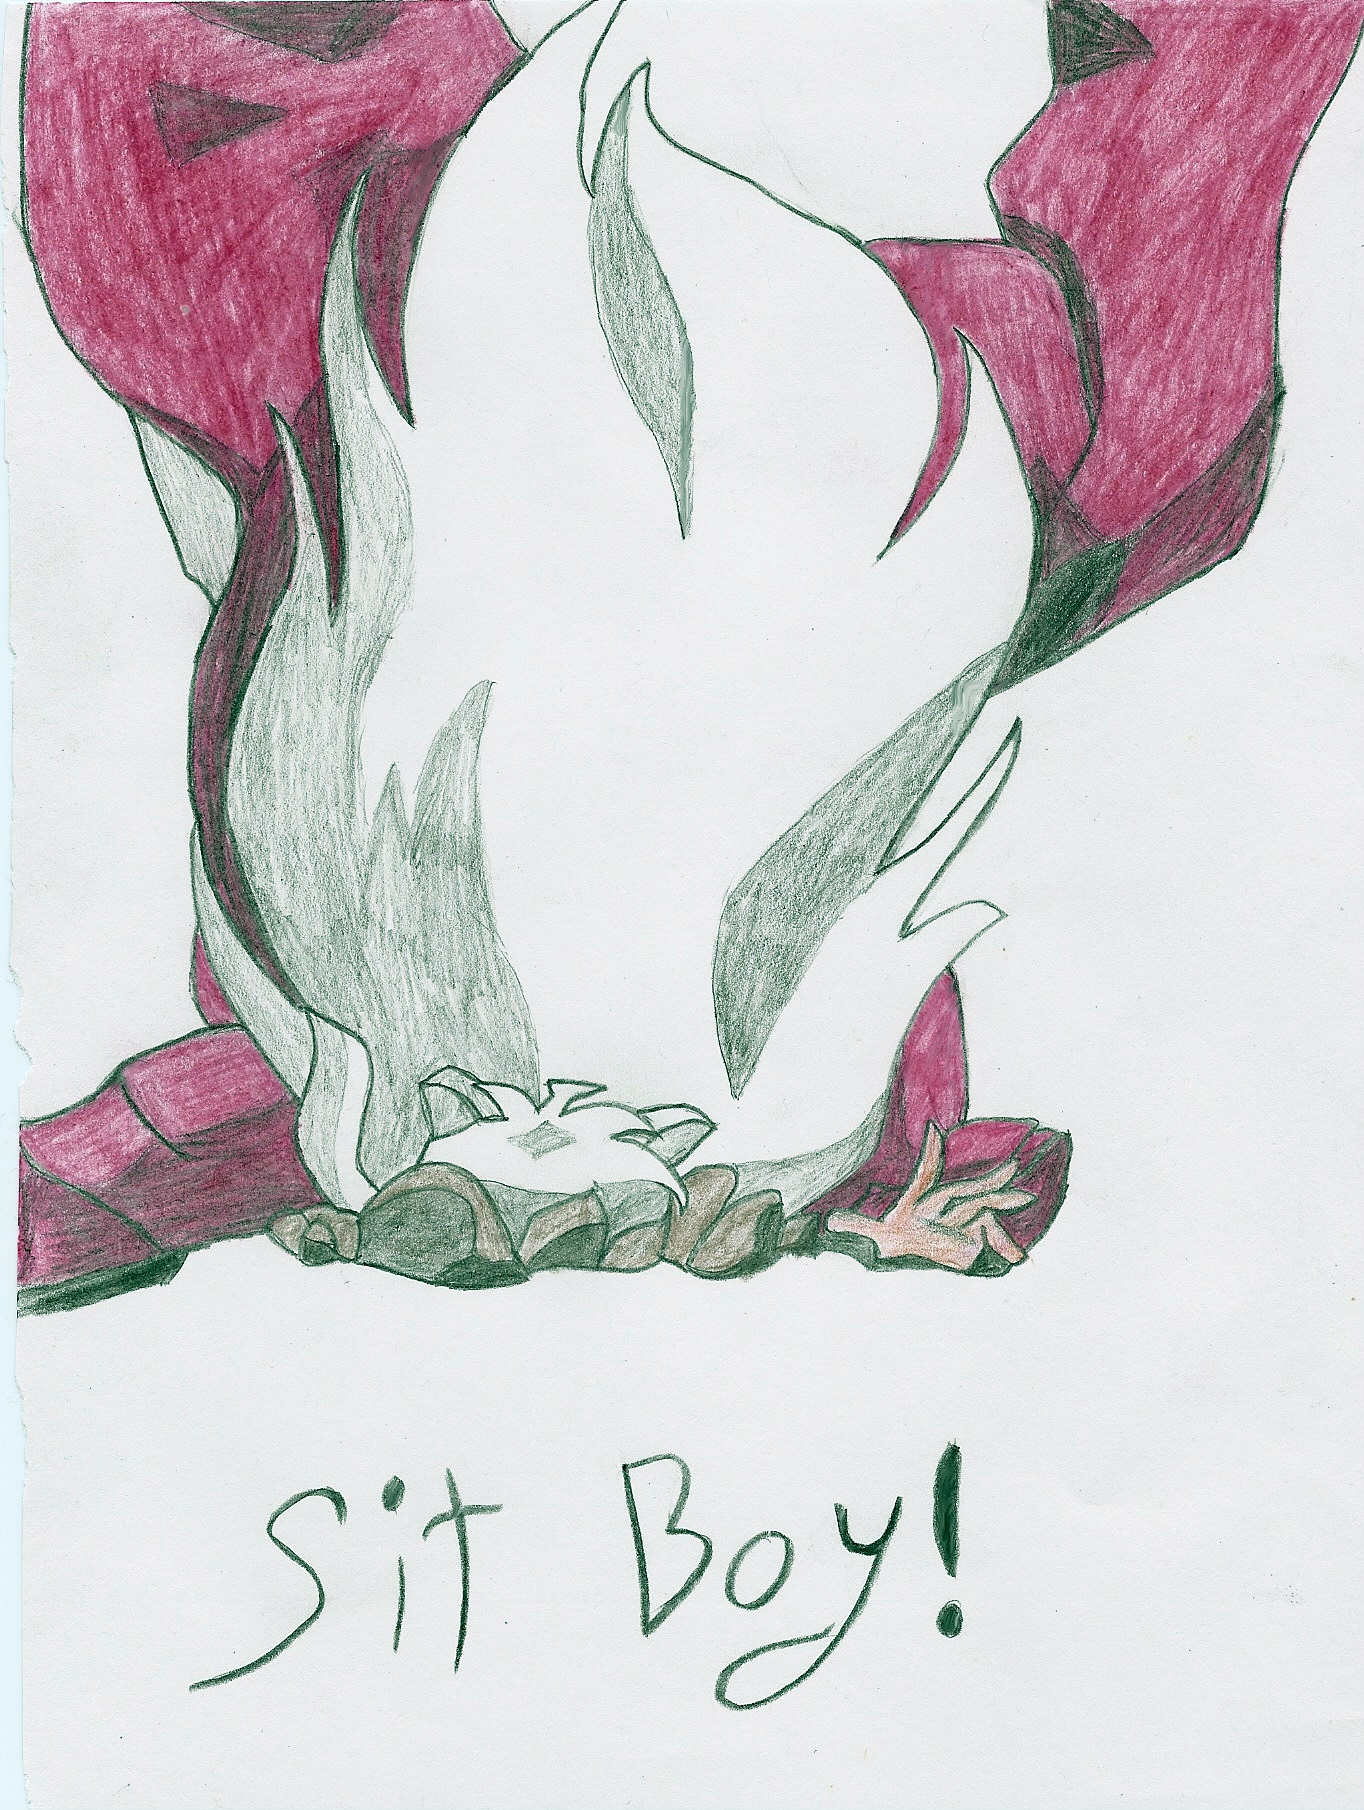 Sit Boy! by dragonlove